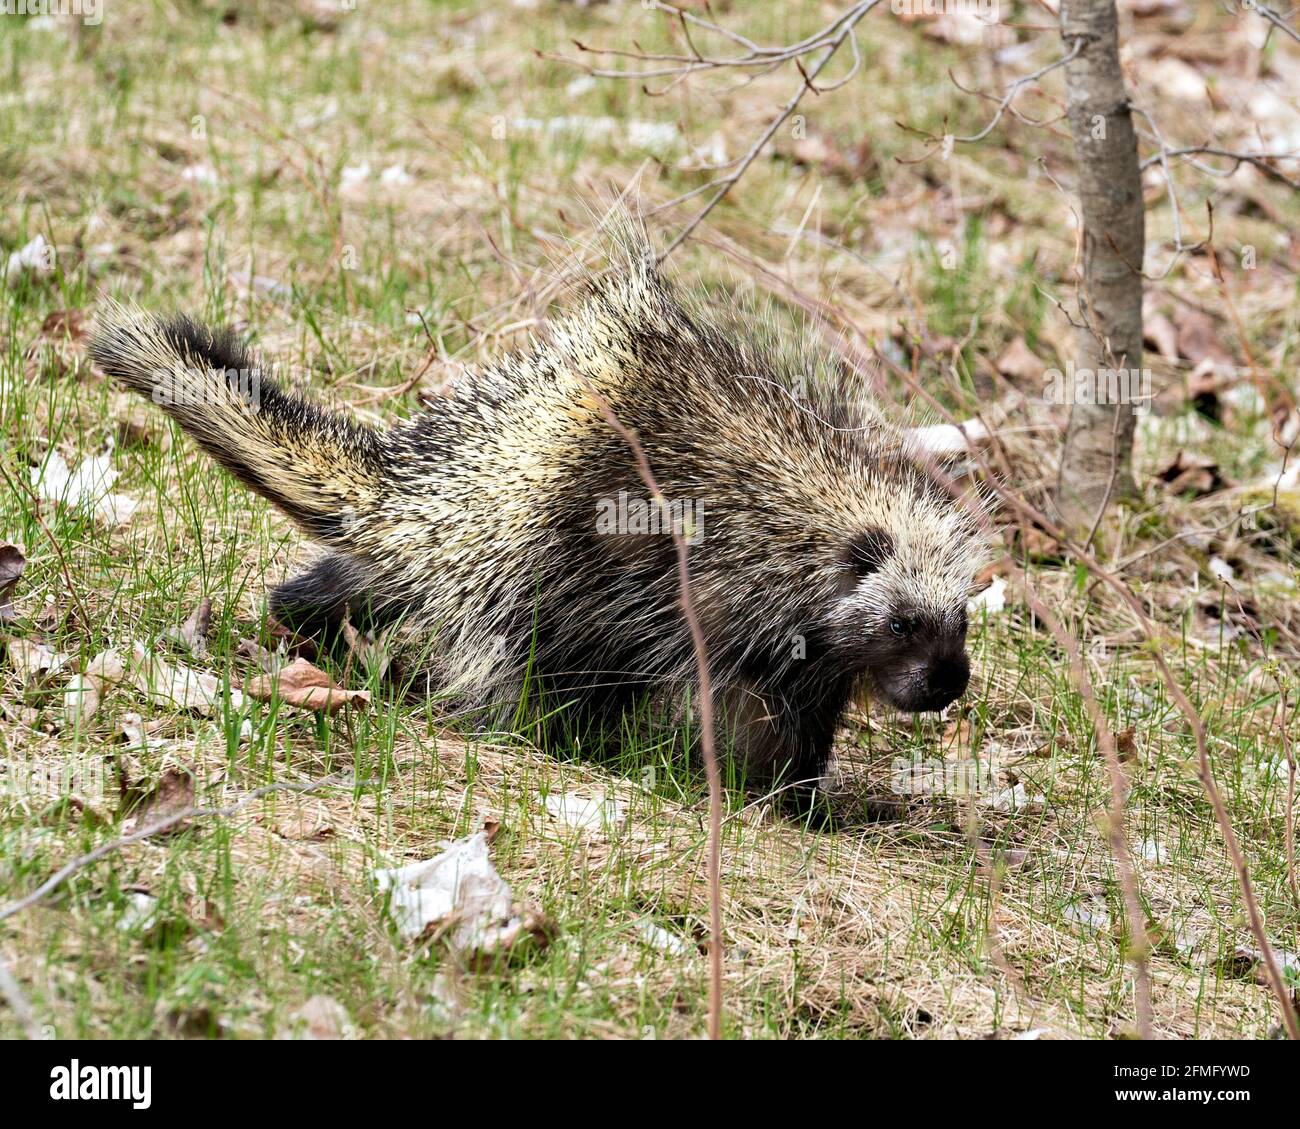 Stachelschweine, die im Grasland mit einem unscharfen Hintergrund wandern und Körper, Kopf, Fell mit scharfen Stacheln und Federköpfen in der Frühjahrssaison in ihrer Umgebung darstellen. Stockfoto